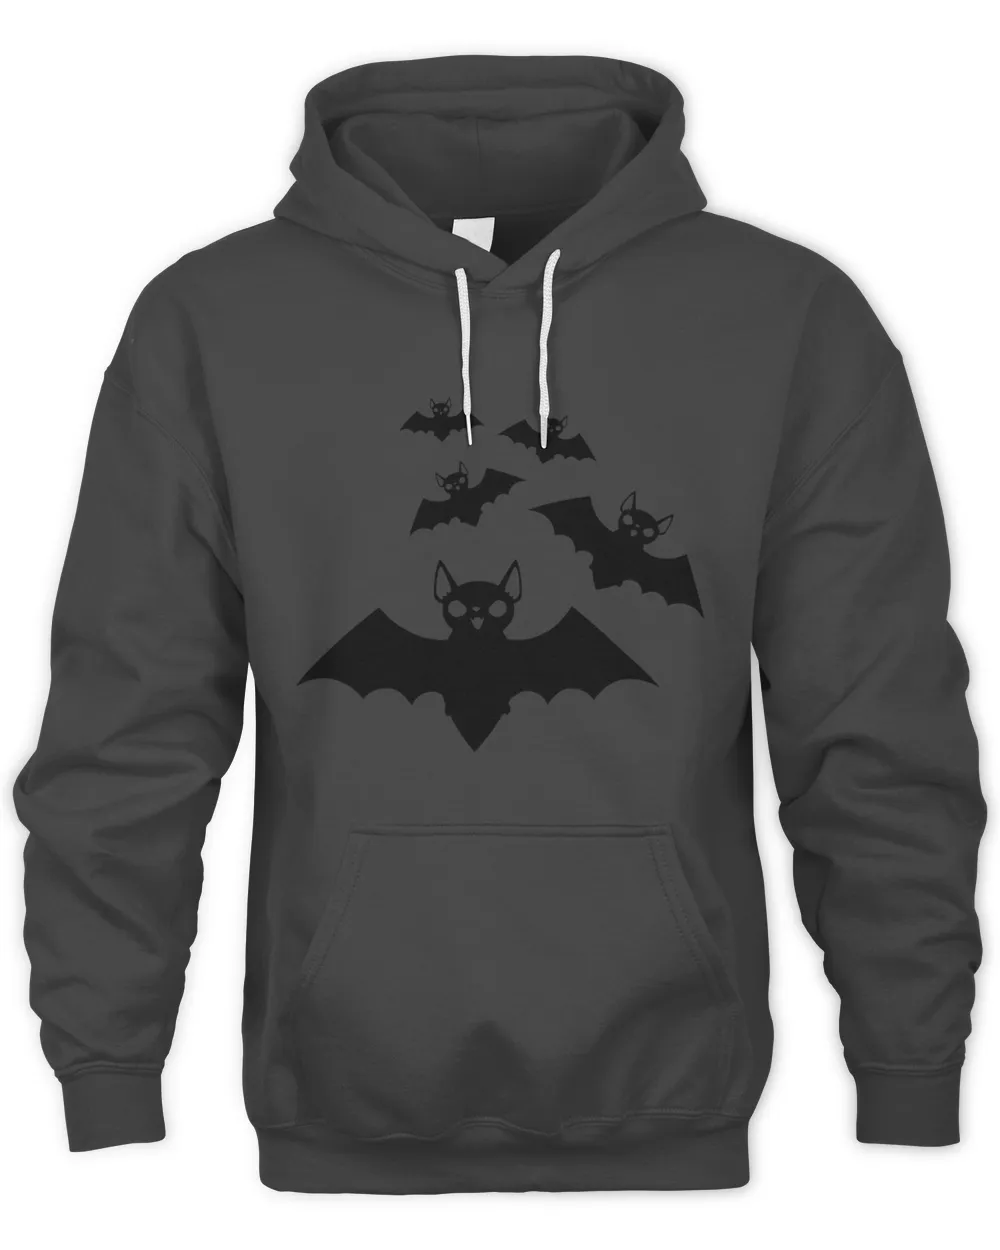 Bats Black